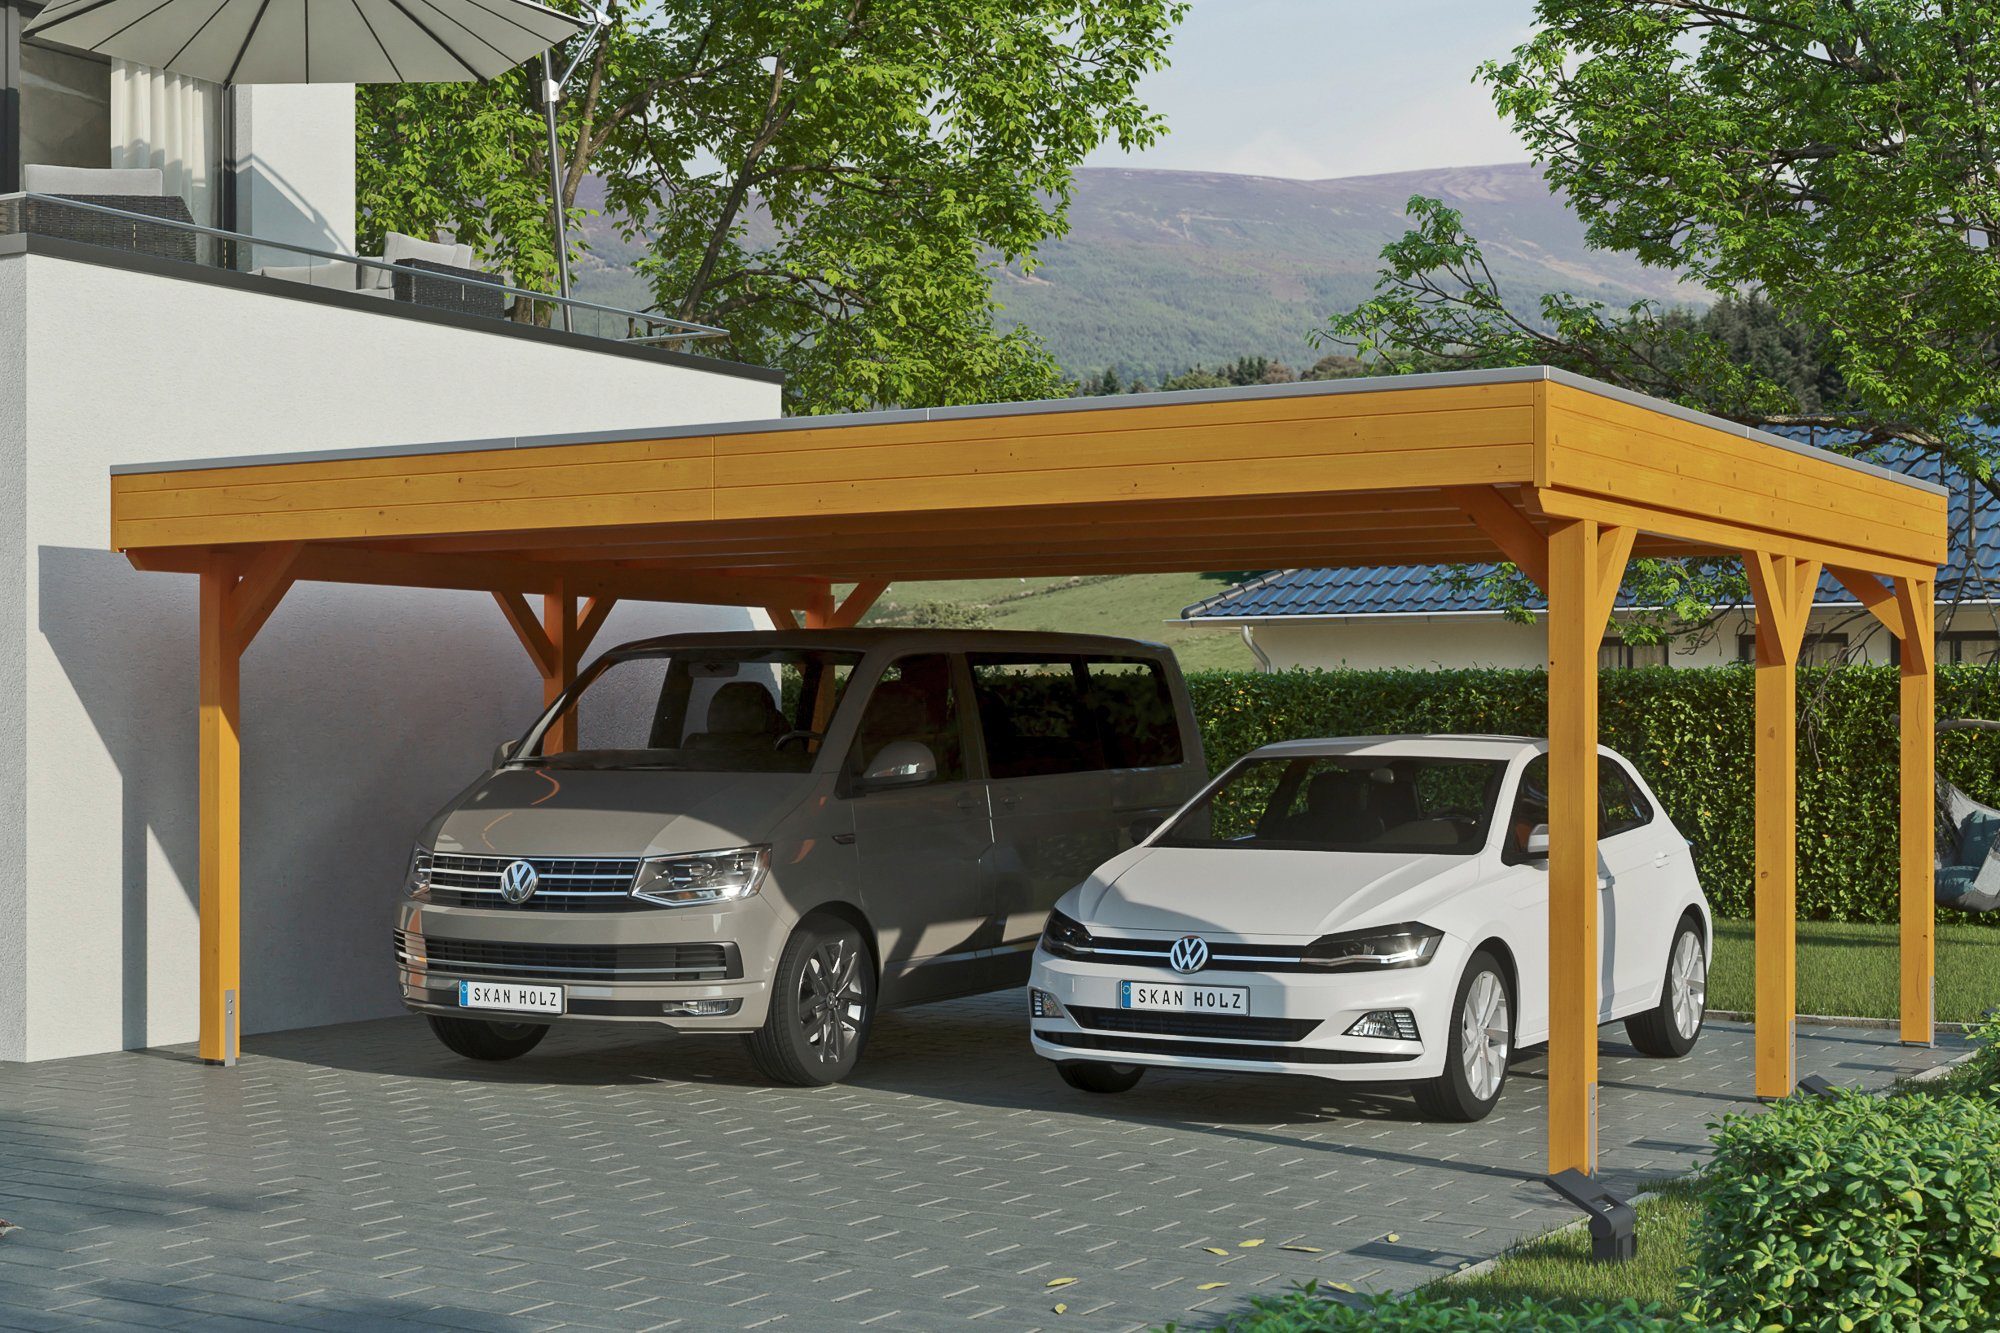 Skanholz Doppelcarport Grunewald, BxT: 622x554 cm, 590 cm Einfahrtshöhe,  mit EPDM-Dach, Flachdach-Carport, farblich behandelt in eiche hell | Carports